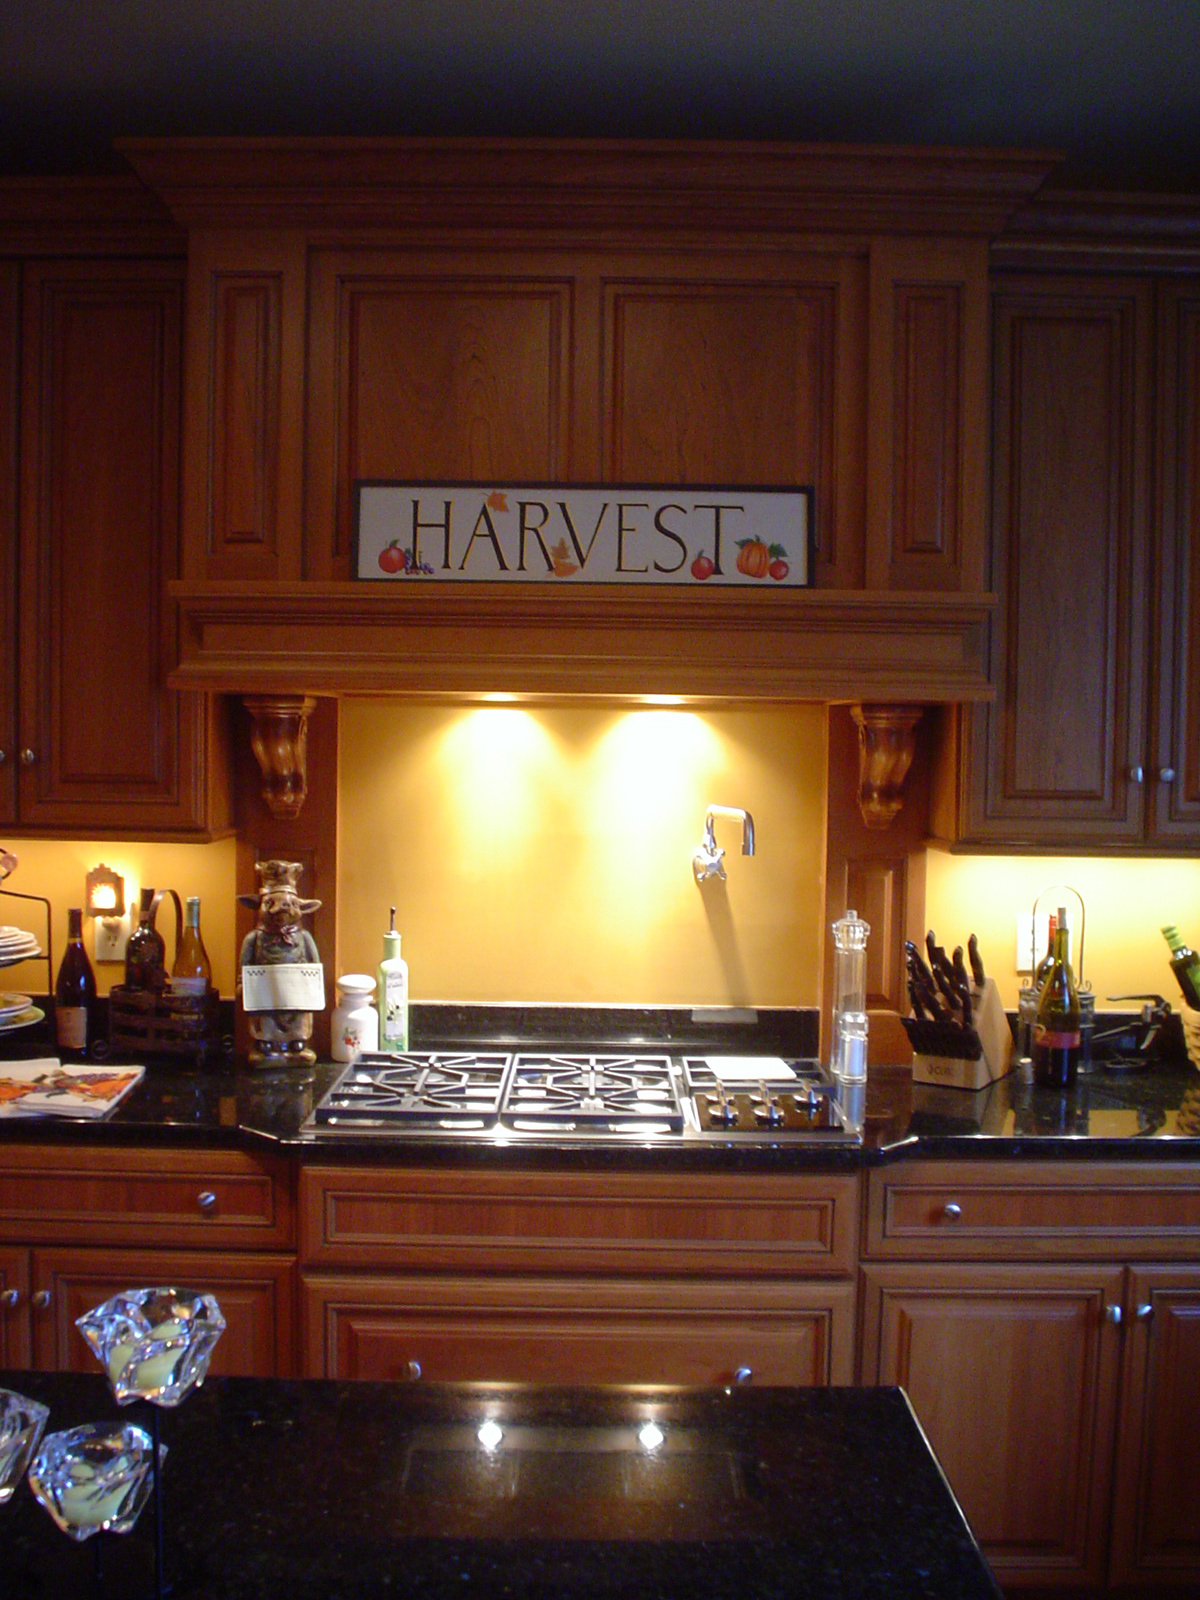 cabinetry  counter tops  appliances  flooring interior design   kitchen design kitchen chef